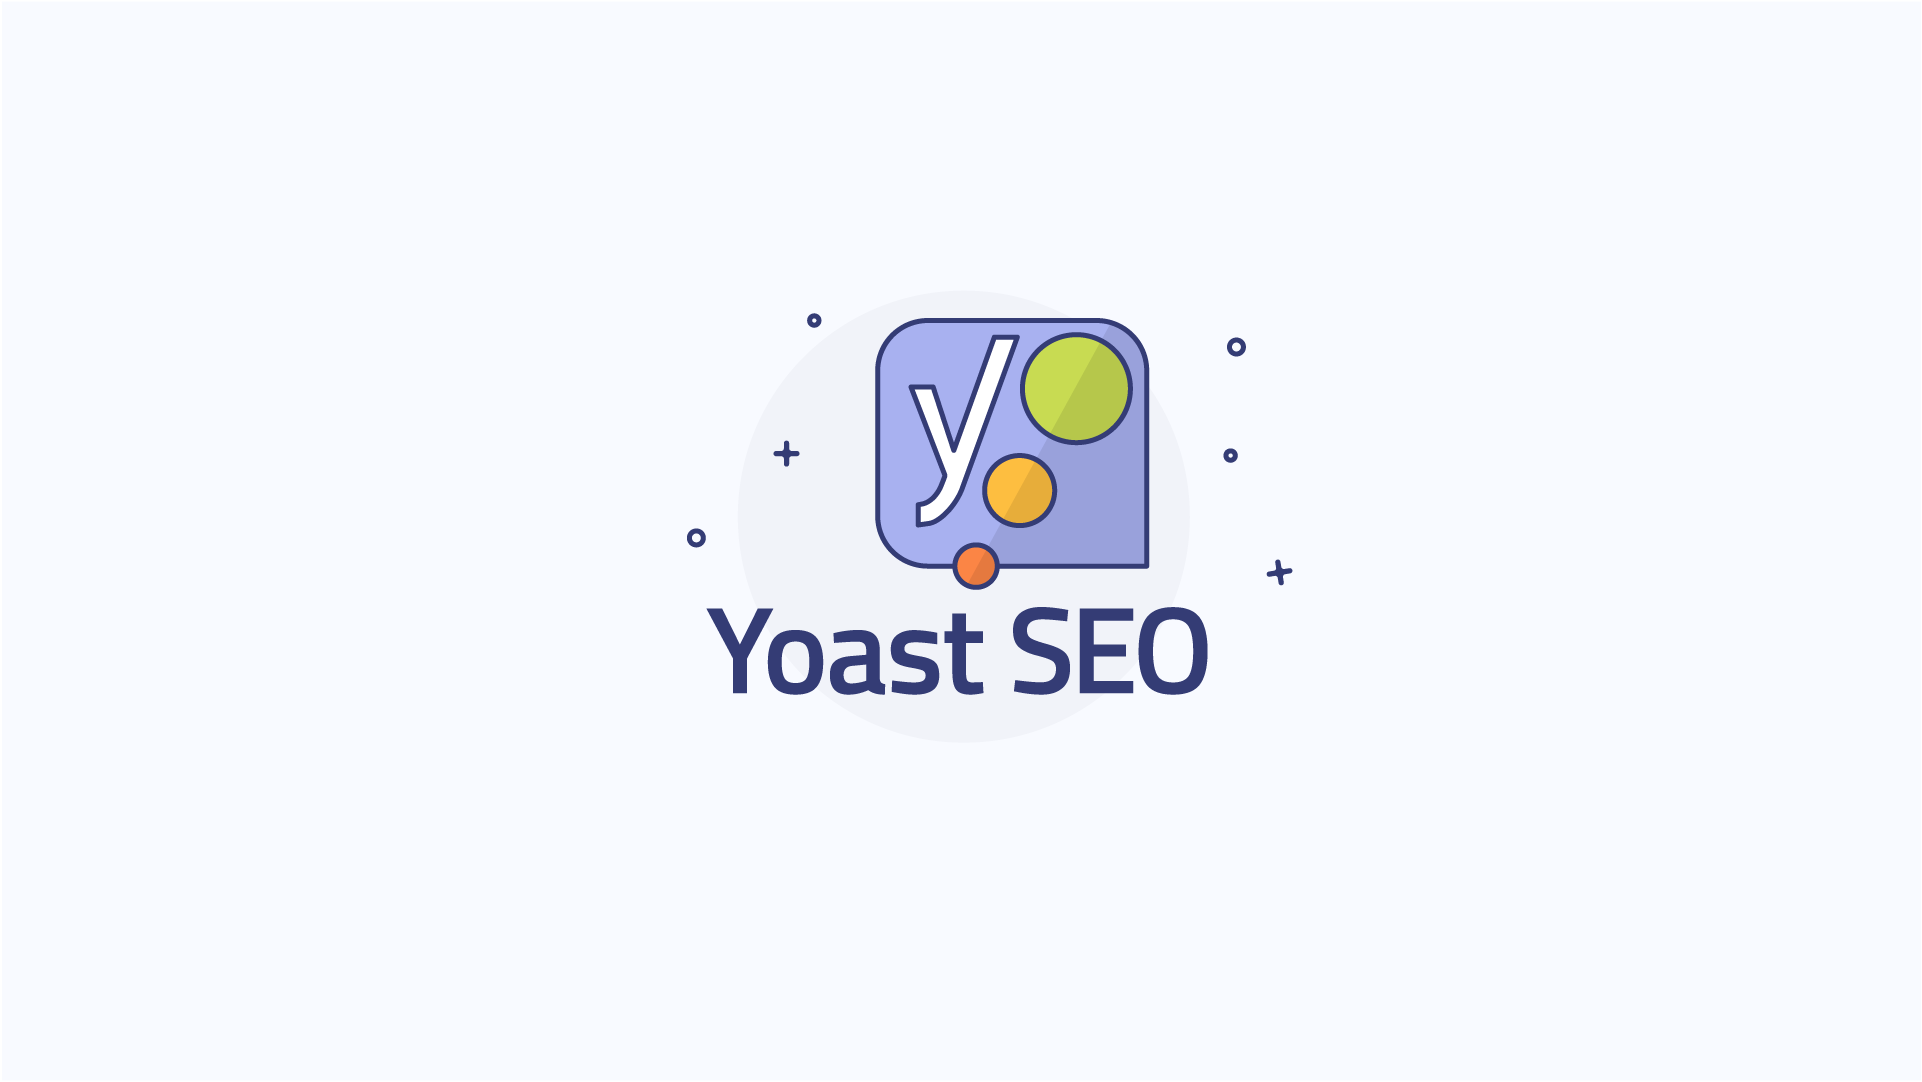 افزونه یوآست سئو با نمایش راهکار هایی چون سطح خوانایی و سئو محتوای شما و همچنین ایجاد سایت مپ و اسکیما برای سایت کمک به بهبود بهینه سازی سایت شما میکند. برای دانلود افزونه yoast Seo Premium